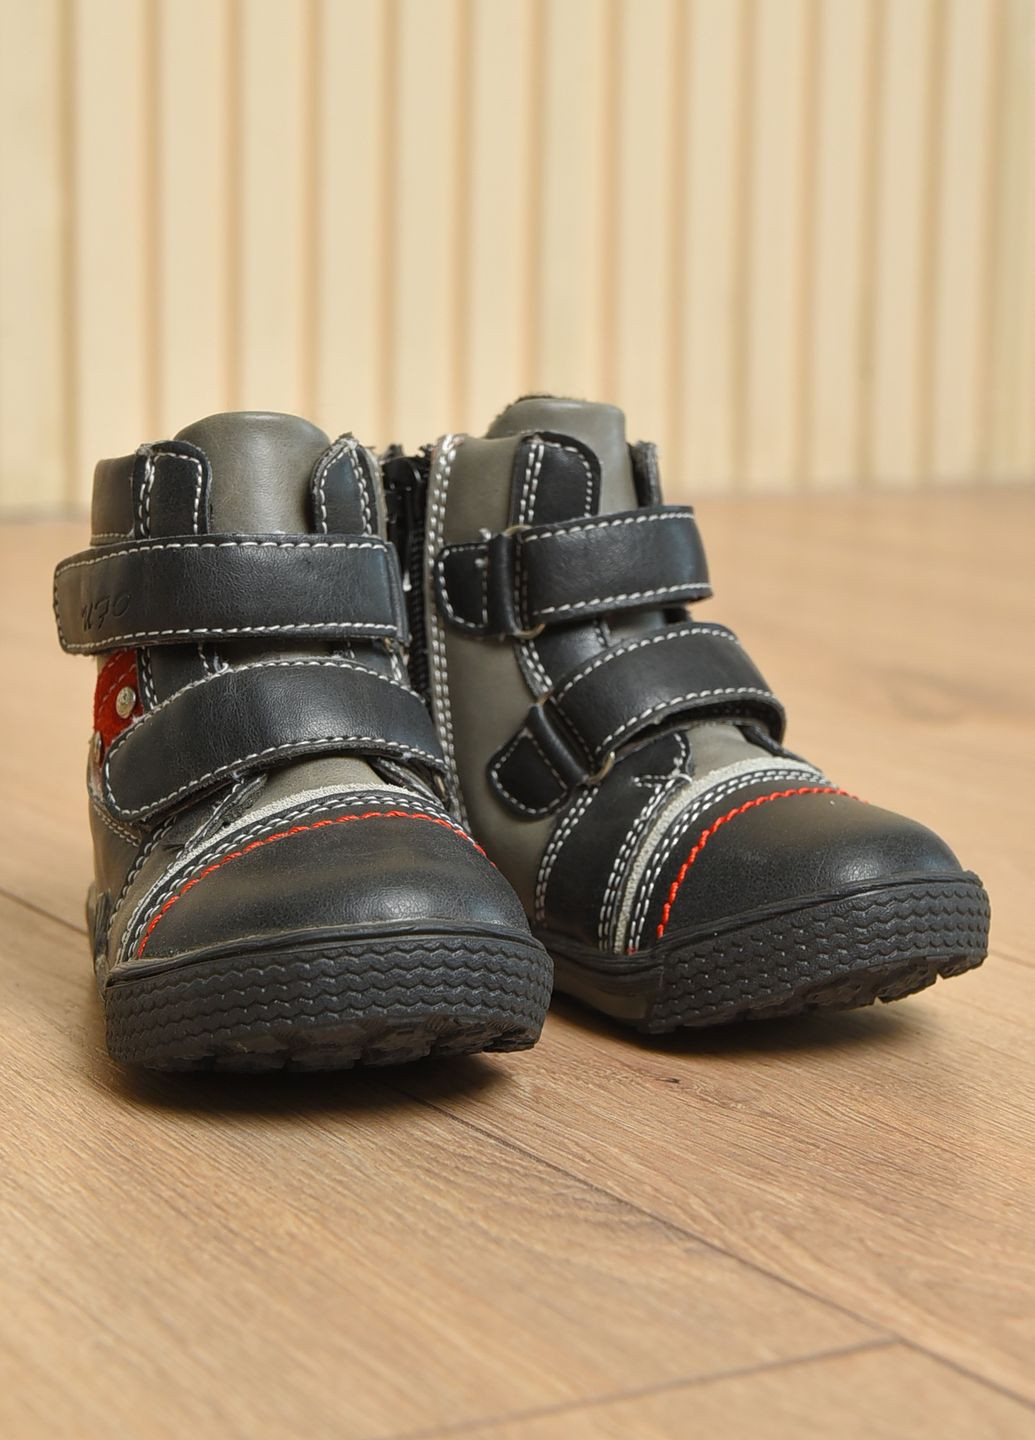 Черные спортивные осенние ботинки детские демисезонные для мальчика черного цвета Let's Shop